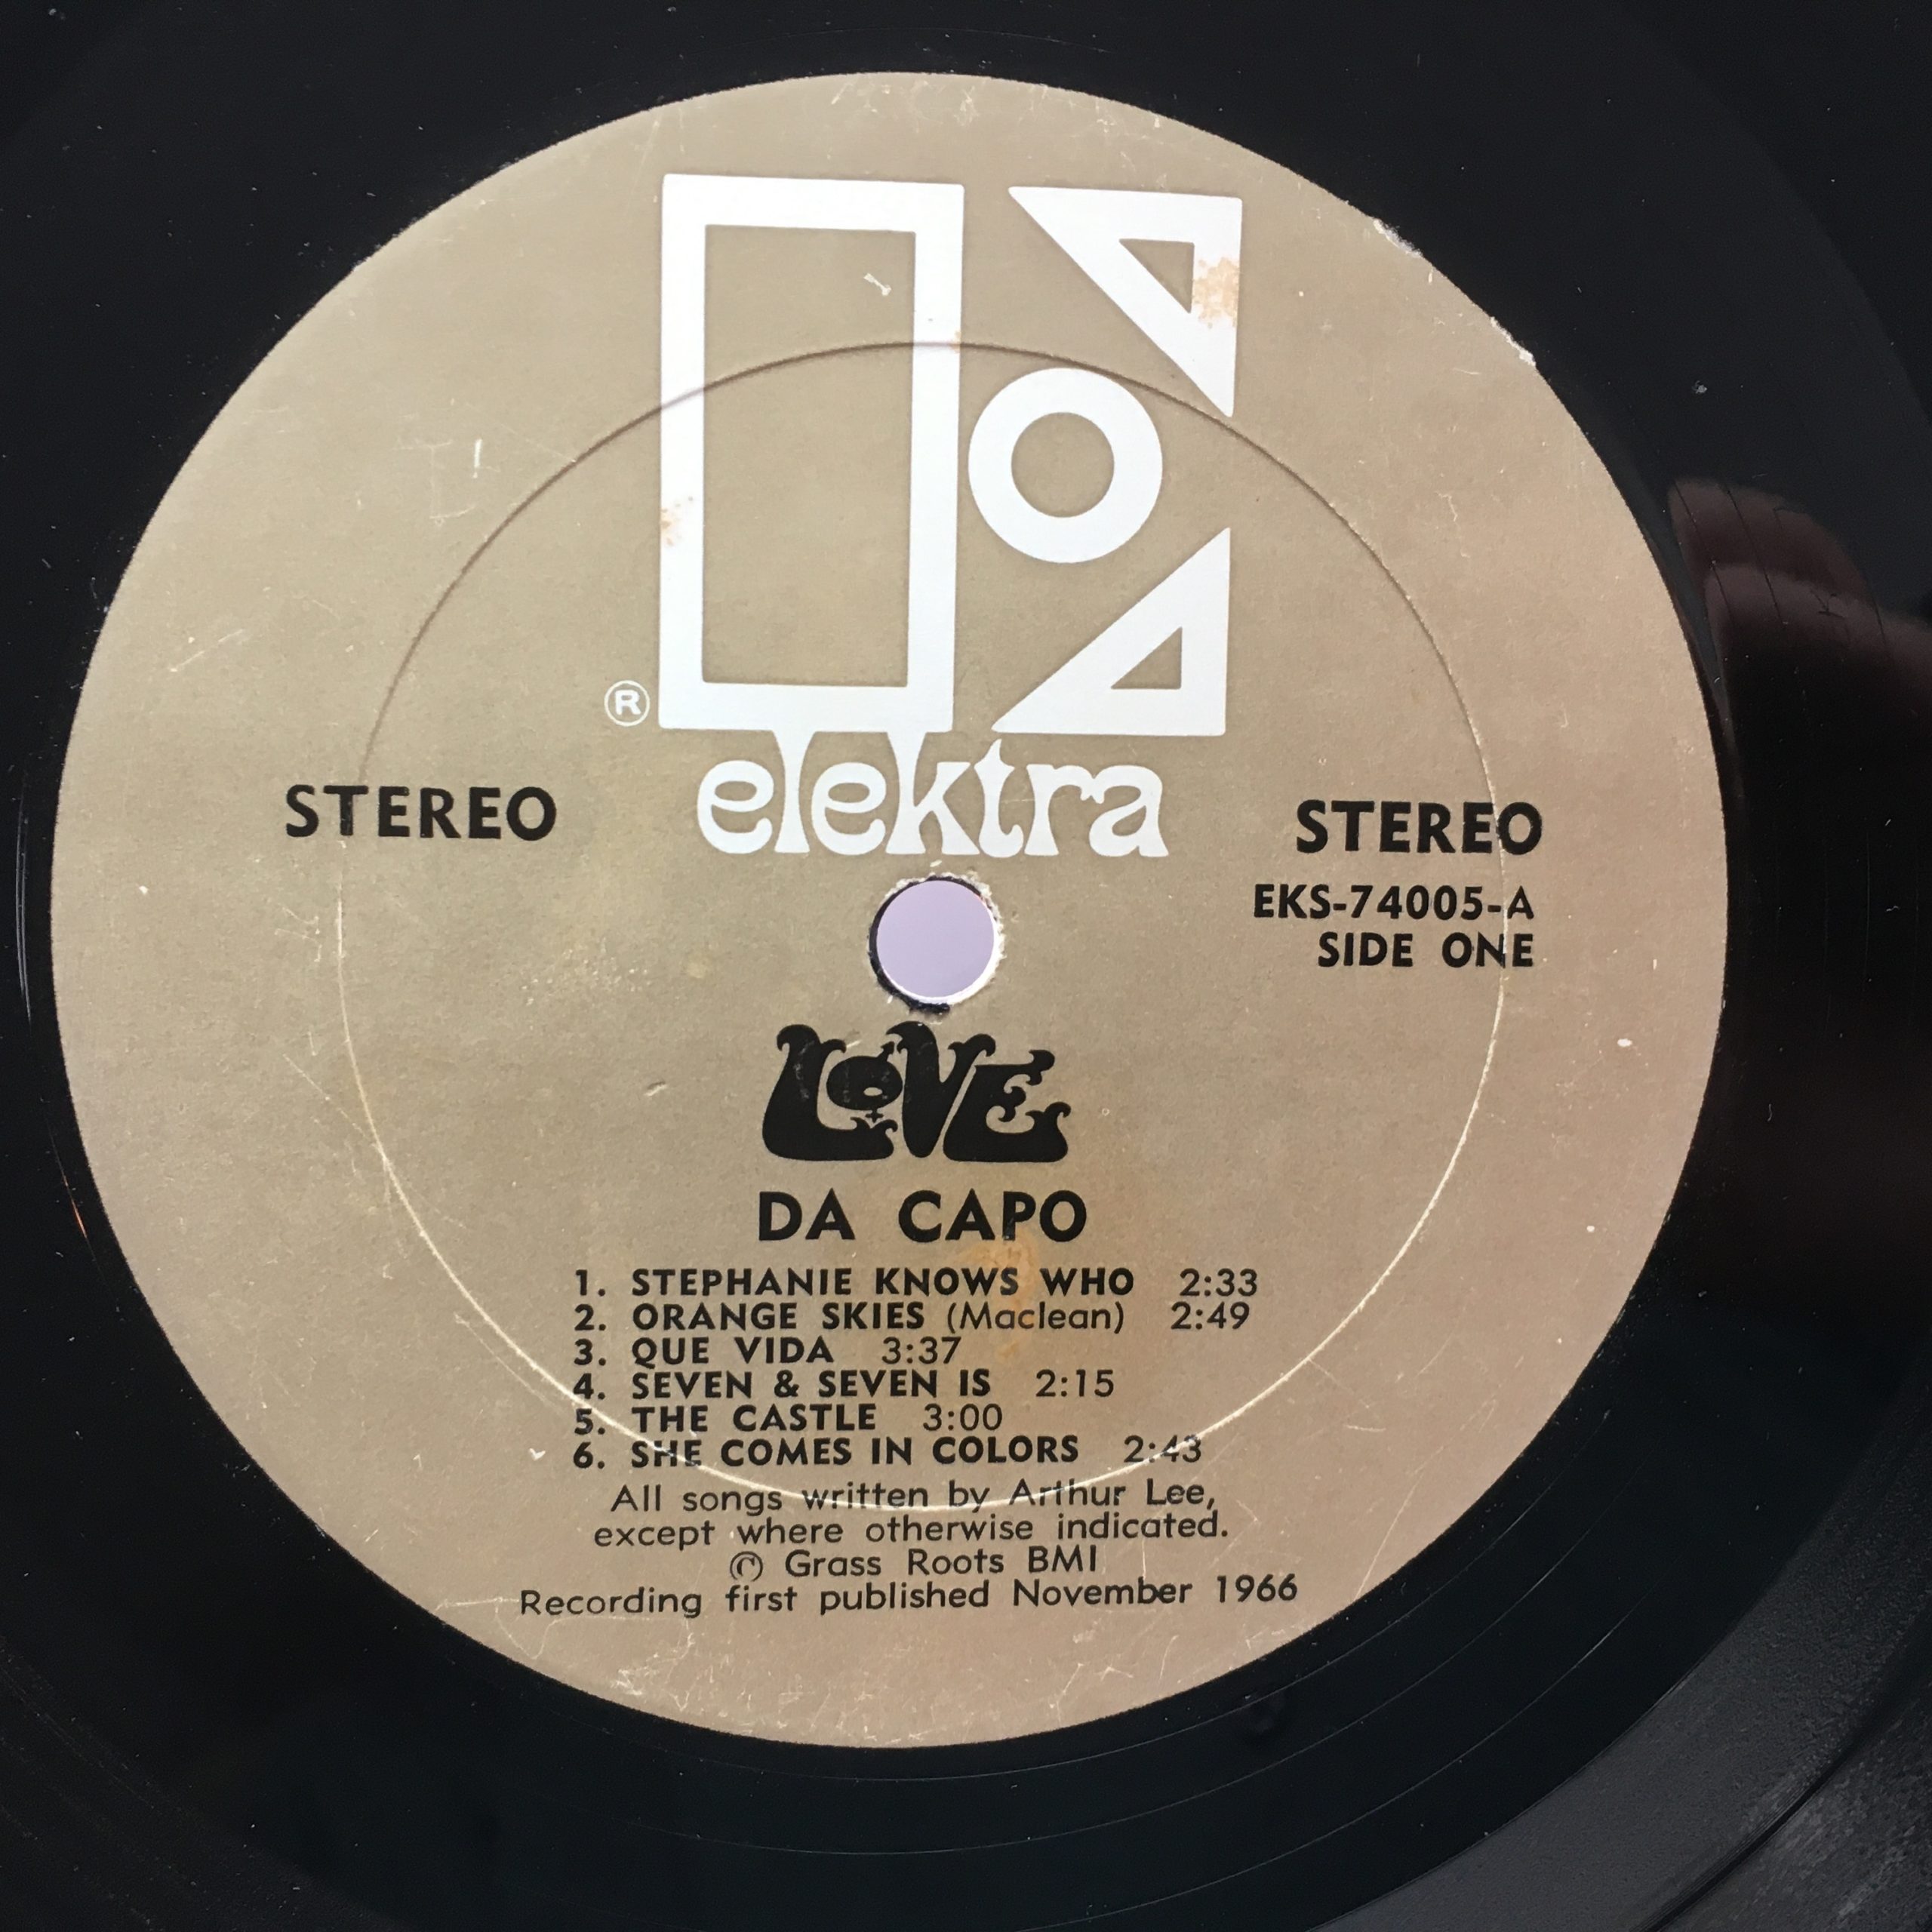 kristen anden websted Love — Da Capo – Vinyl Distractions